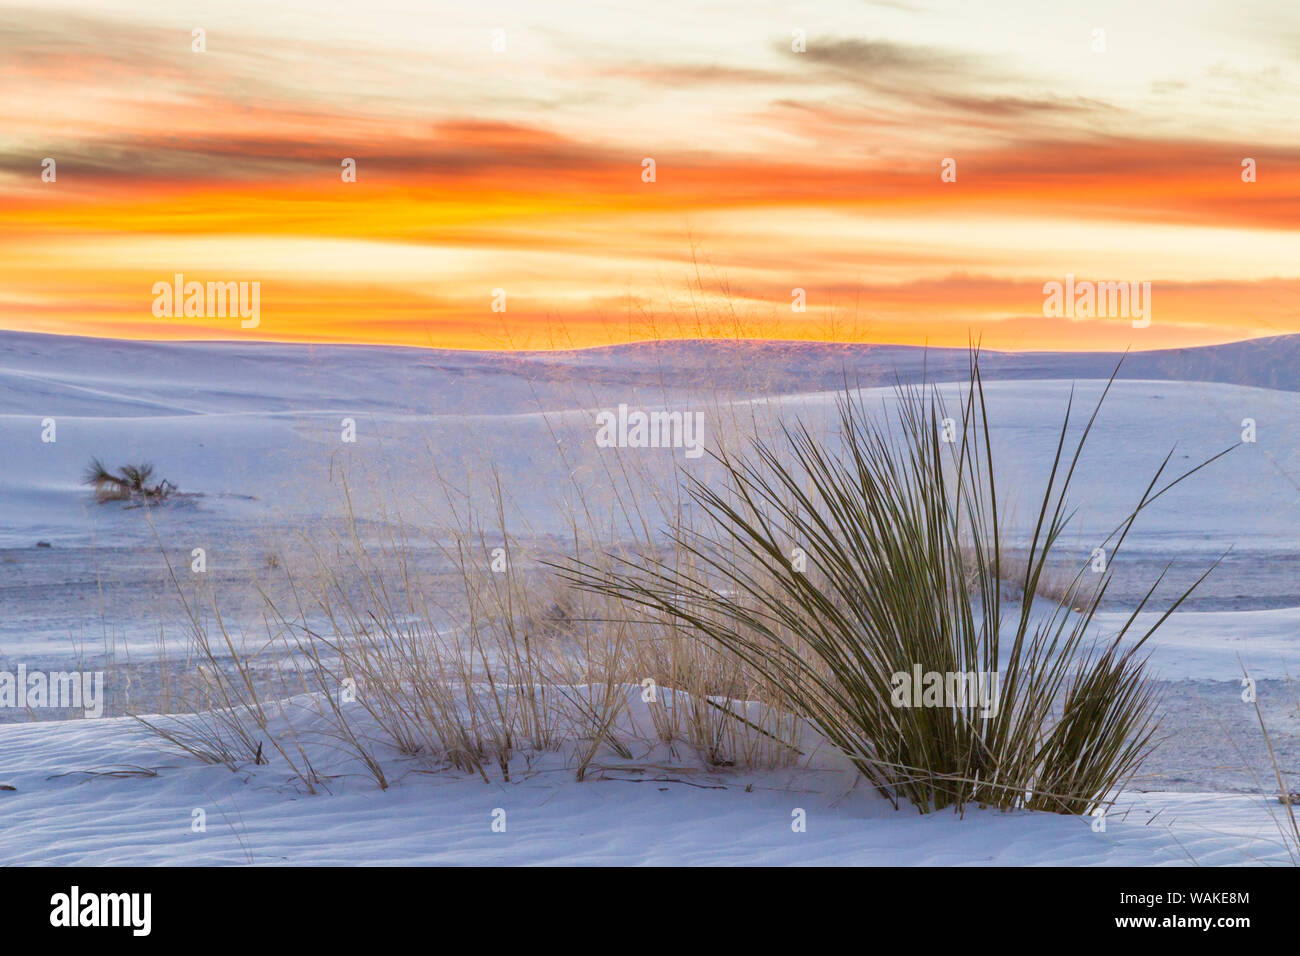 Stati Uniti d'America, Nuovo Messico, White Sands National Park. Le dune di sabbia e yucca pianta a sunrise. Credito come: Cathy e Gordon Illg Jaynes / Galleria / DanitaDelimont.com Foto Stock